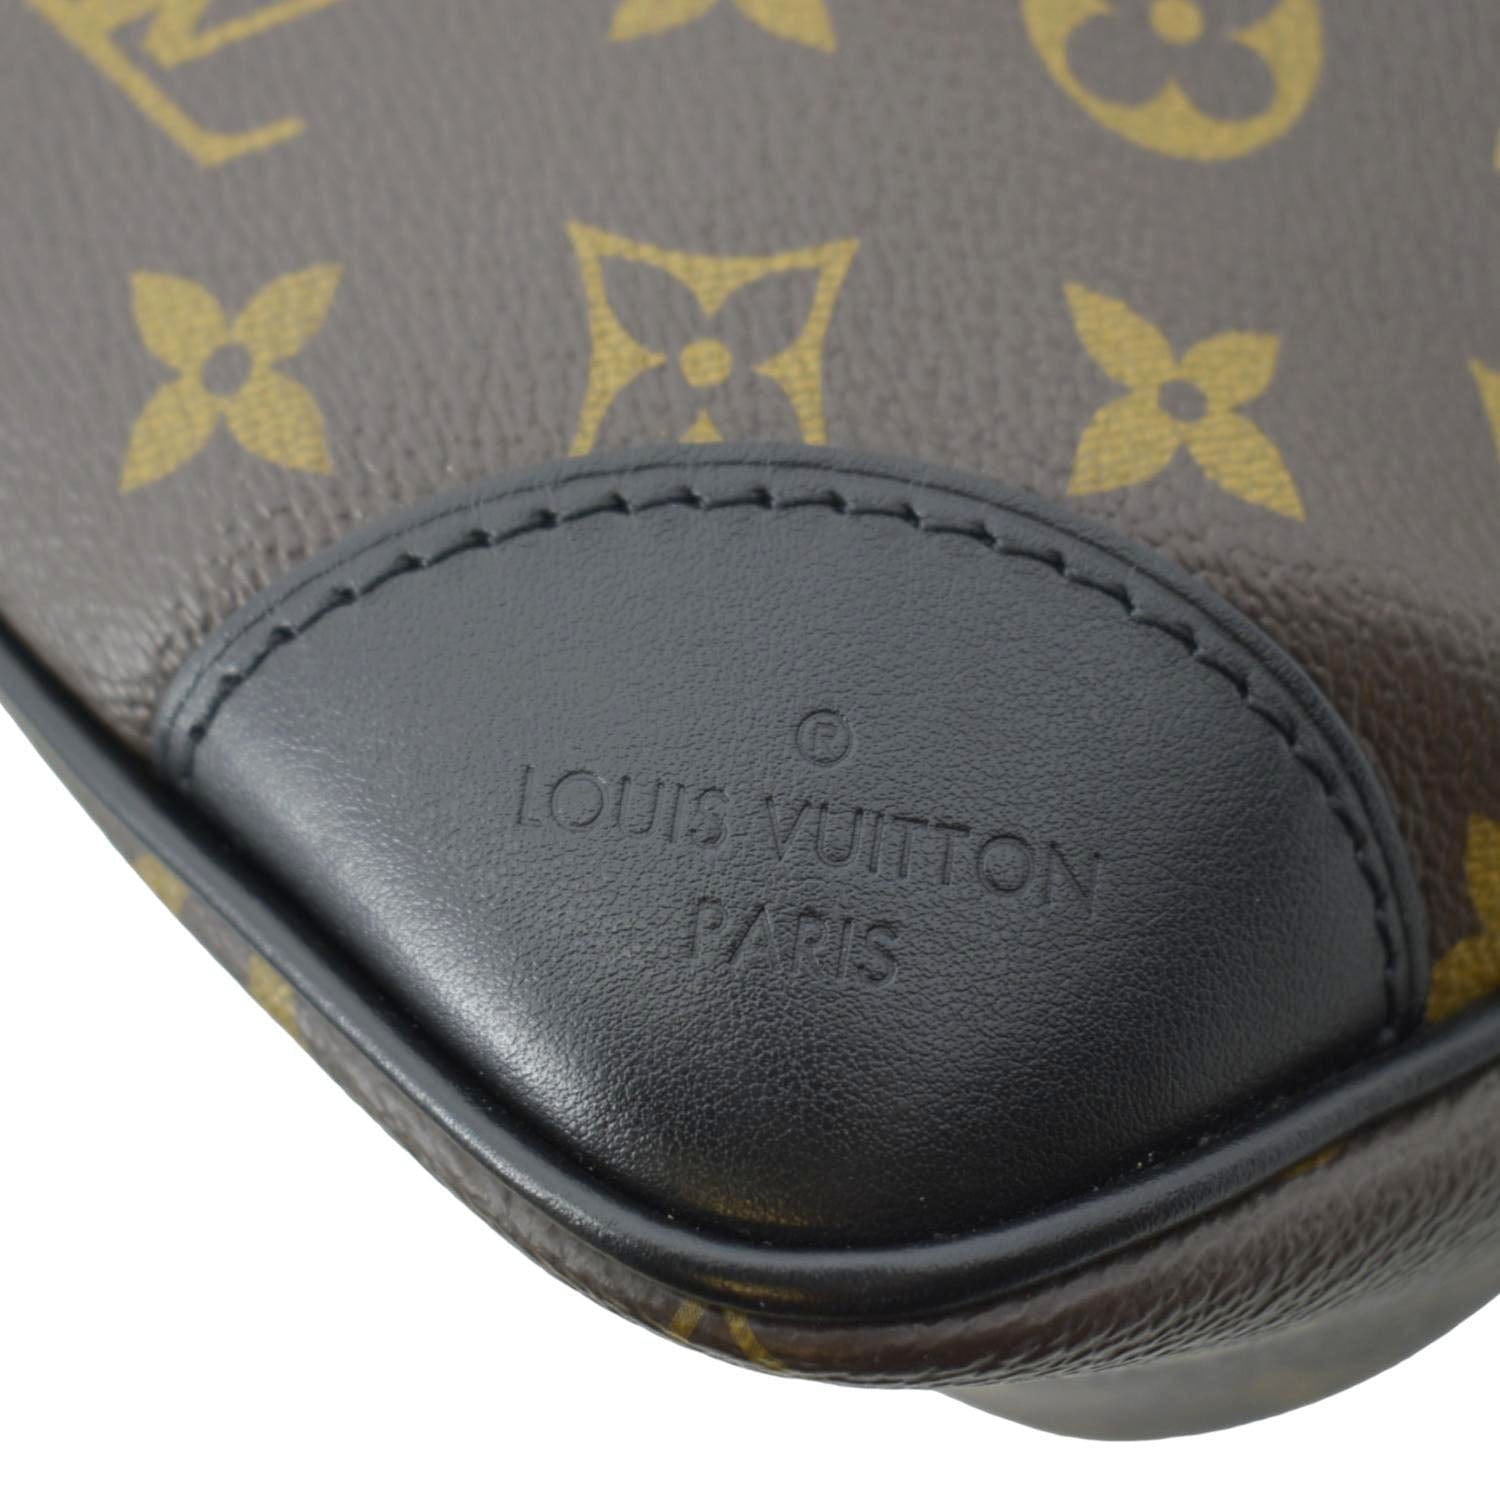 Authentic LOUIS VUITTON Boulogne 35/GM Monogram Shoulder Bag!Good